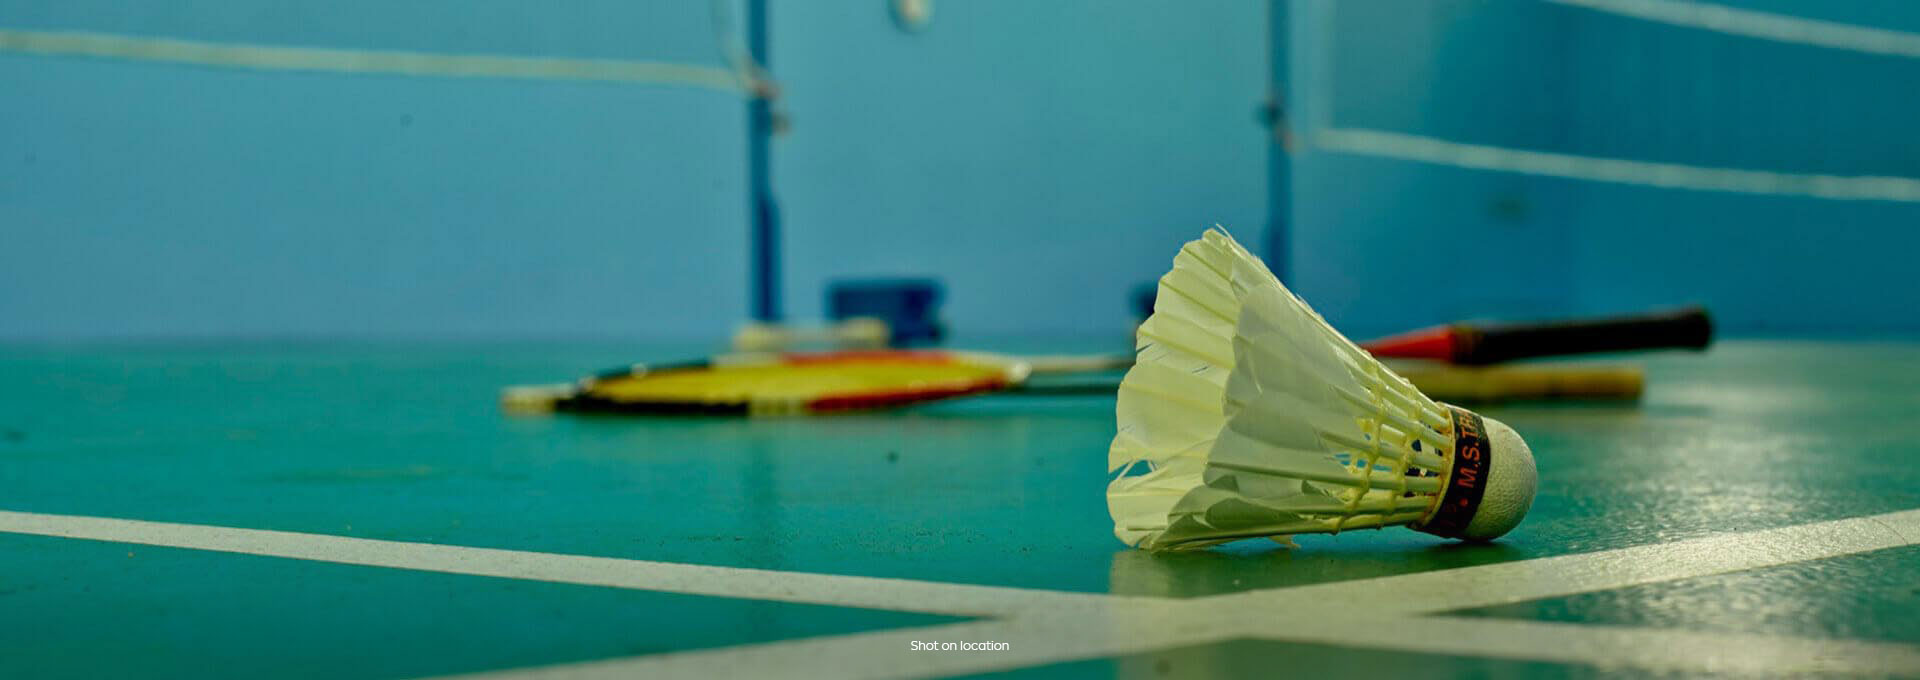 anchorage omr badminton